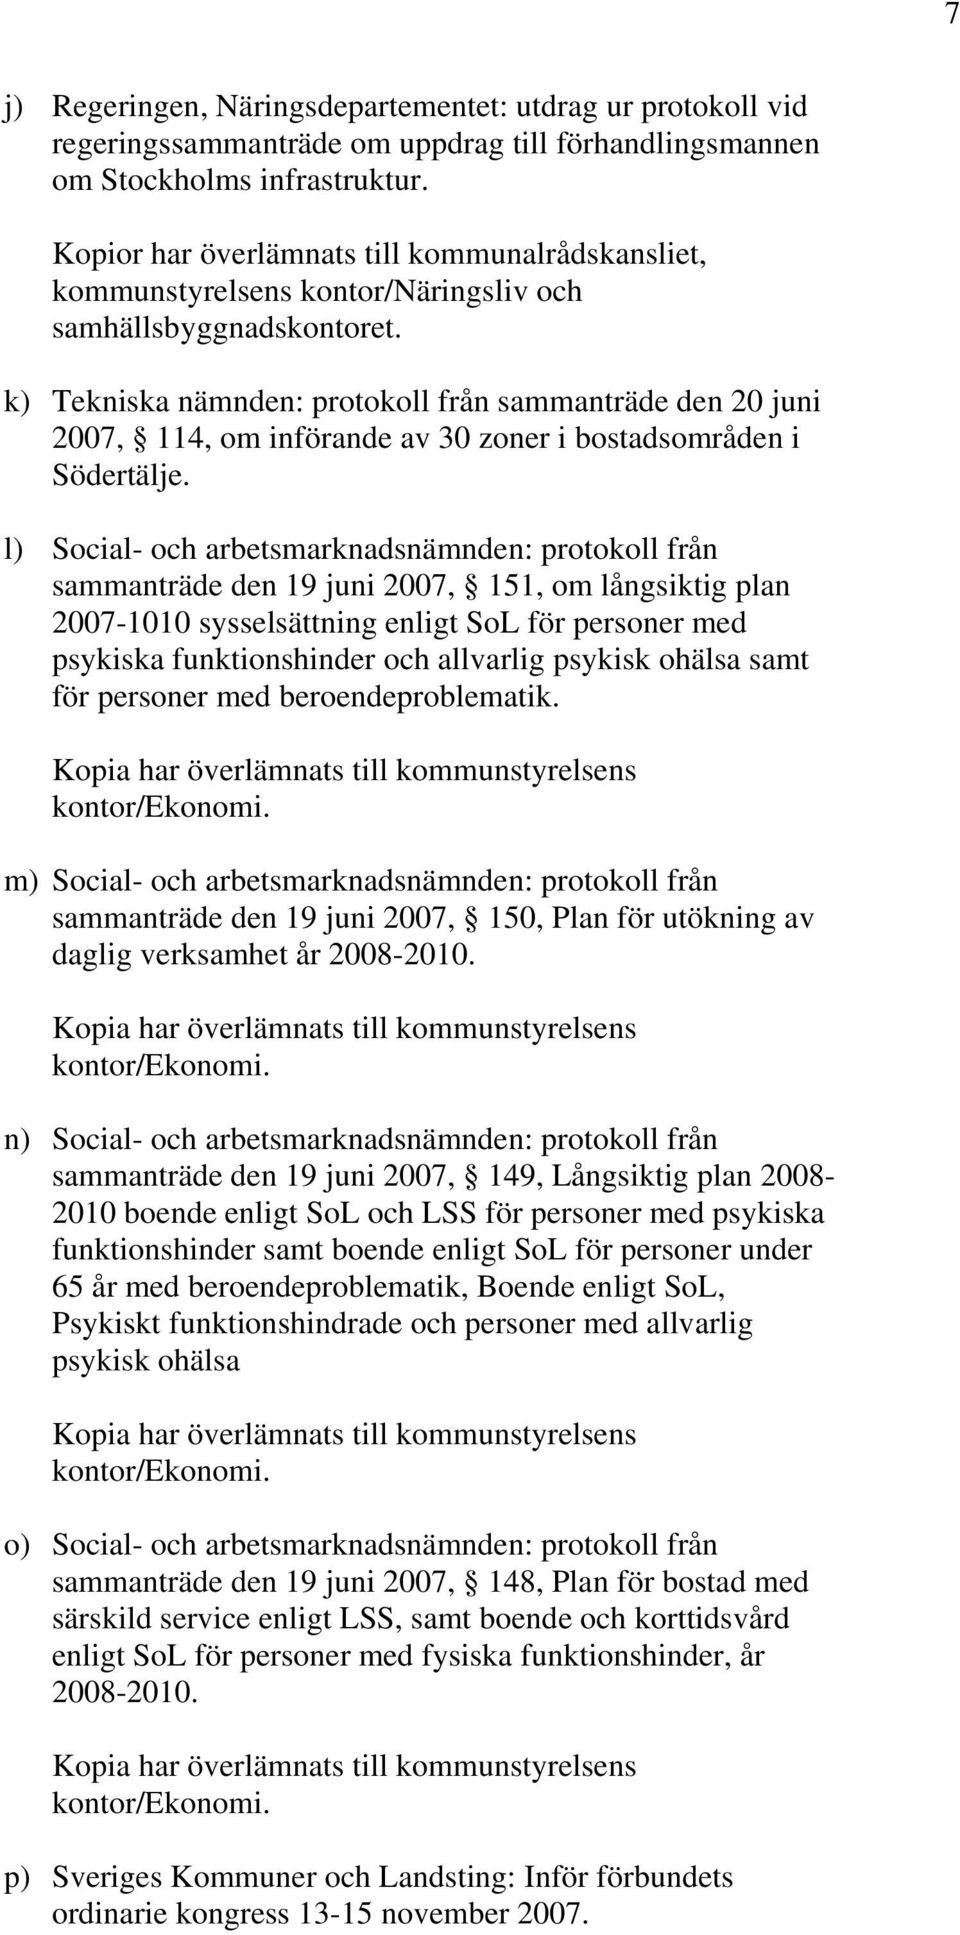 k) Tekniska nämnden: protokoll från sammanträde den 20 juni 2007, 114, om införande av 30 zoner i bostadsområden i Södertälje.